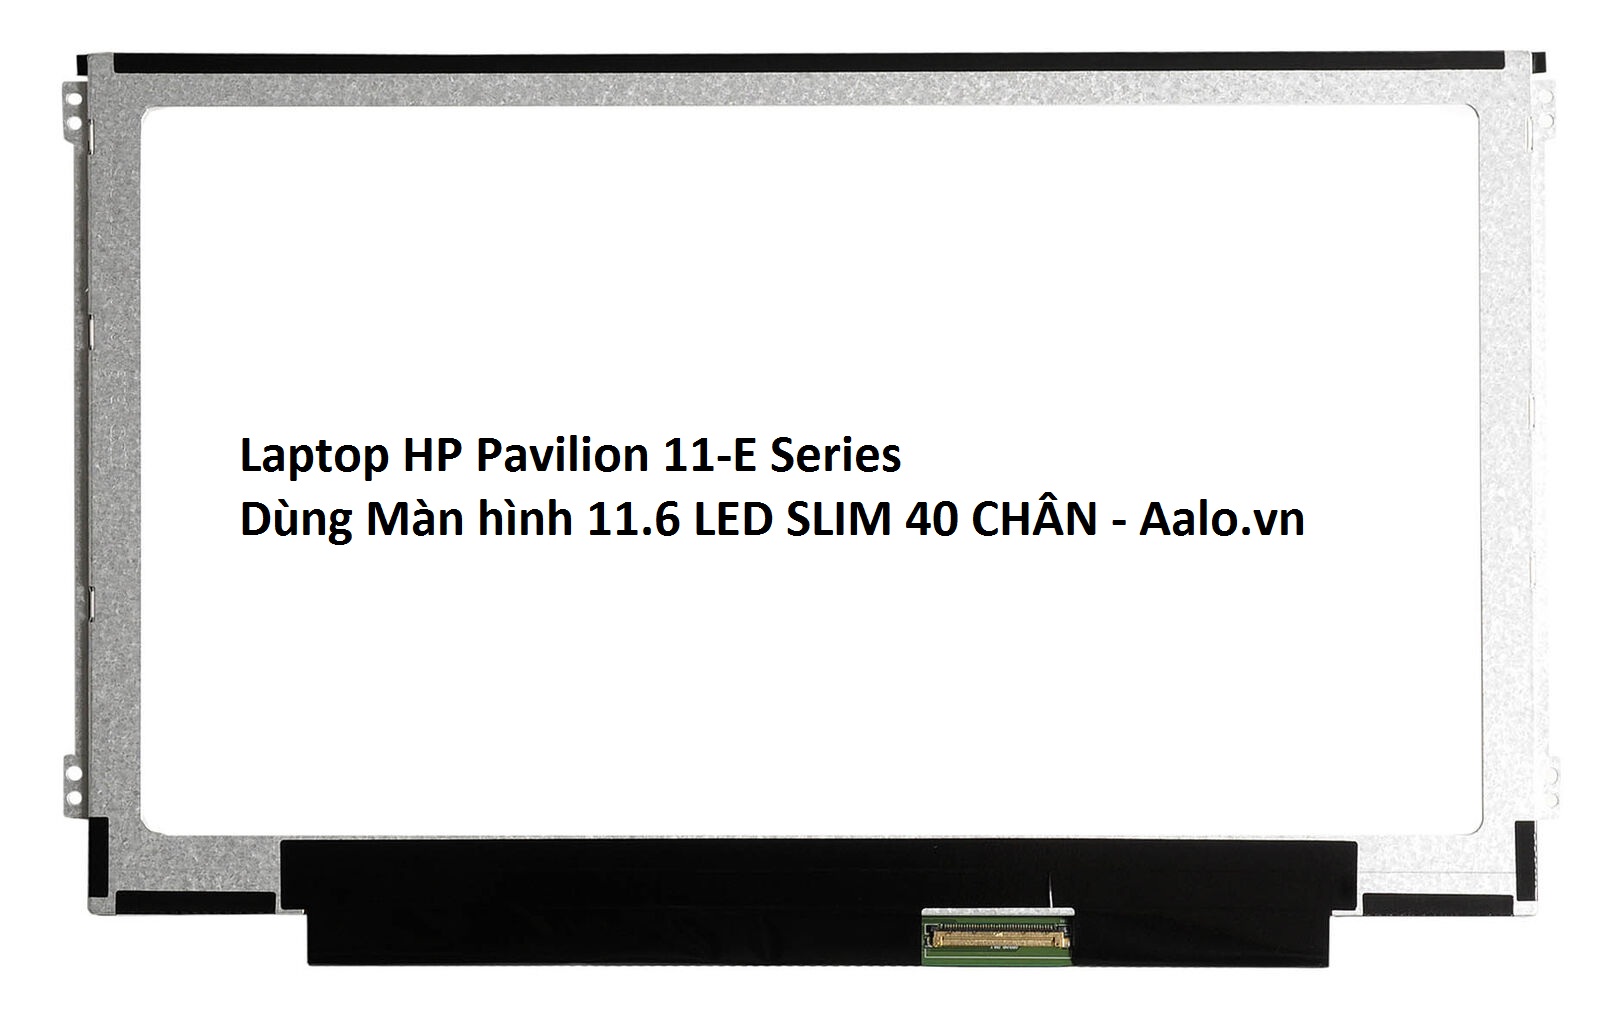 Màn hình Laptop HP Pavilion 11-E Series - Aalo.vn